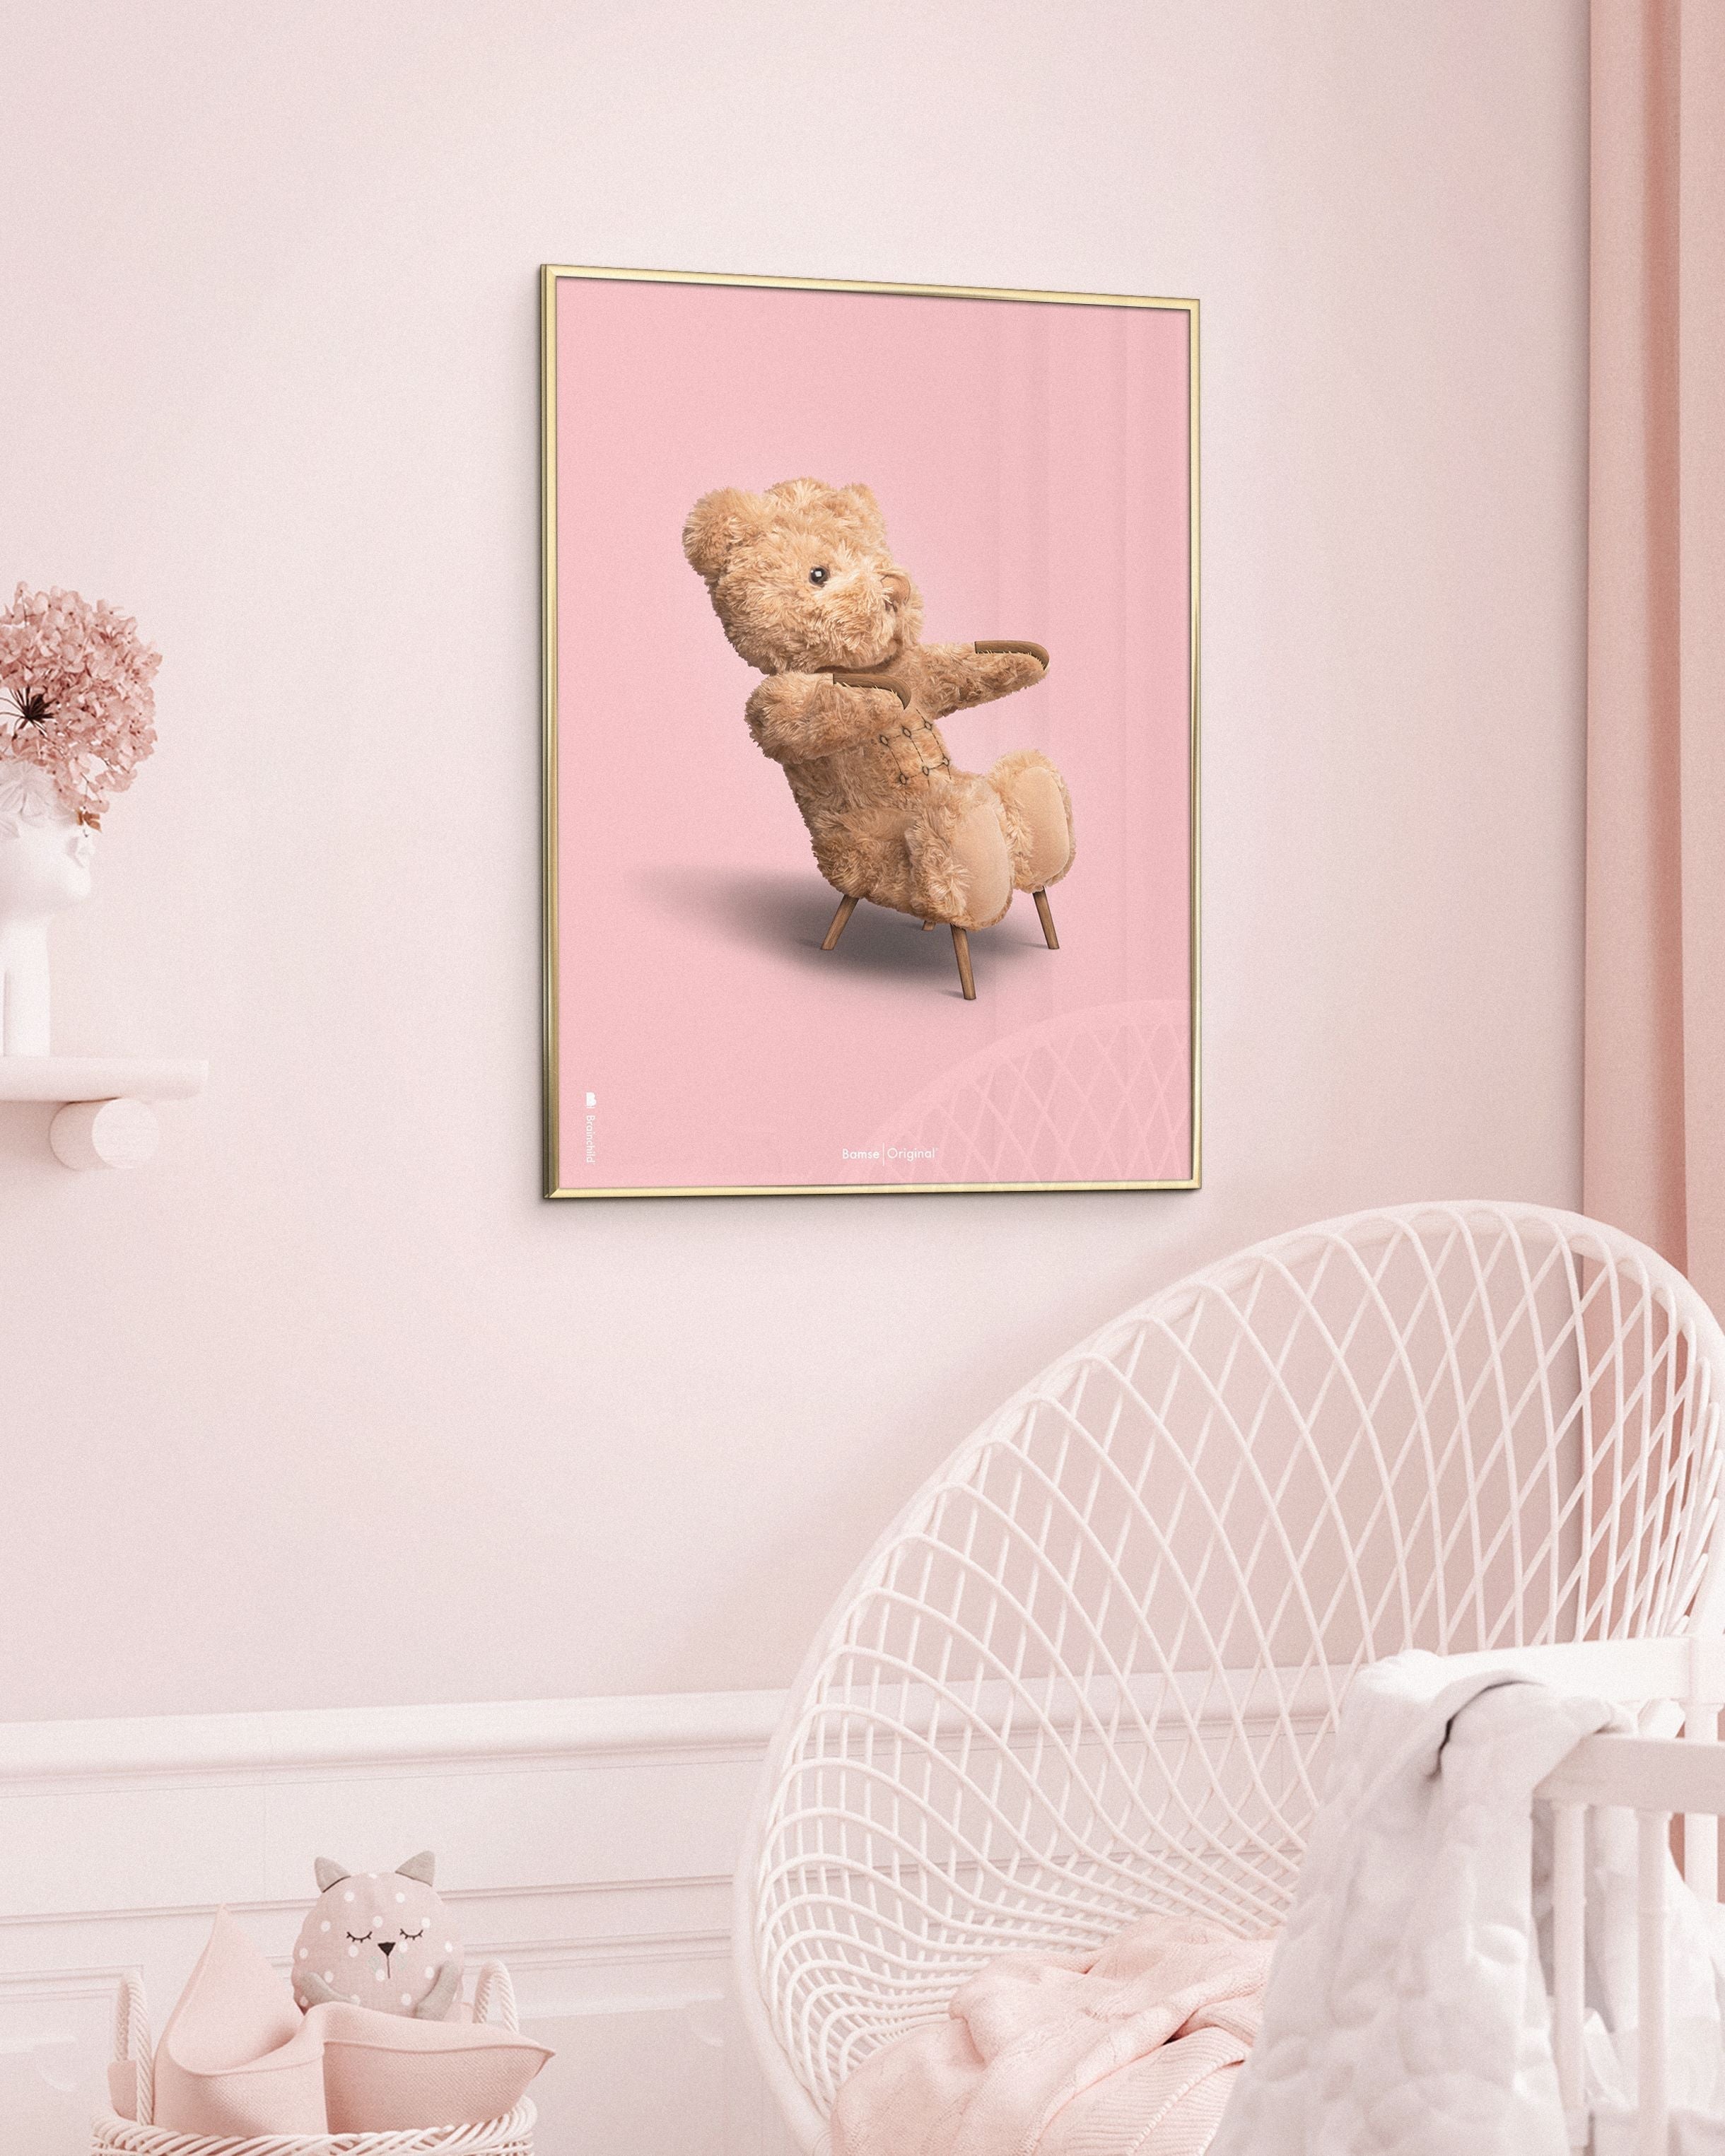 Brainchild Teddy Bear Classic plakát z plakátu vyrobený z černého lakovaného dřeva 70x100 cm, růžové pozadí